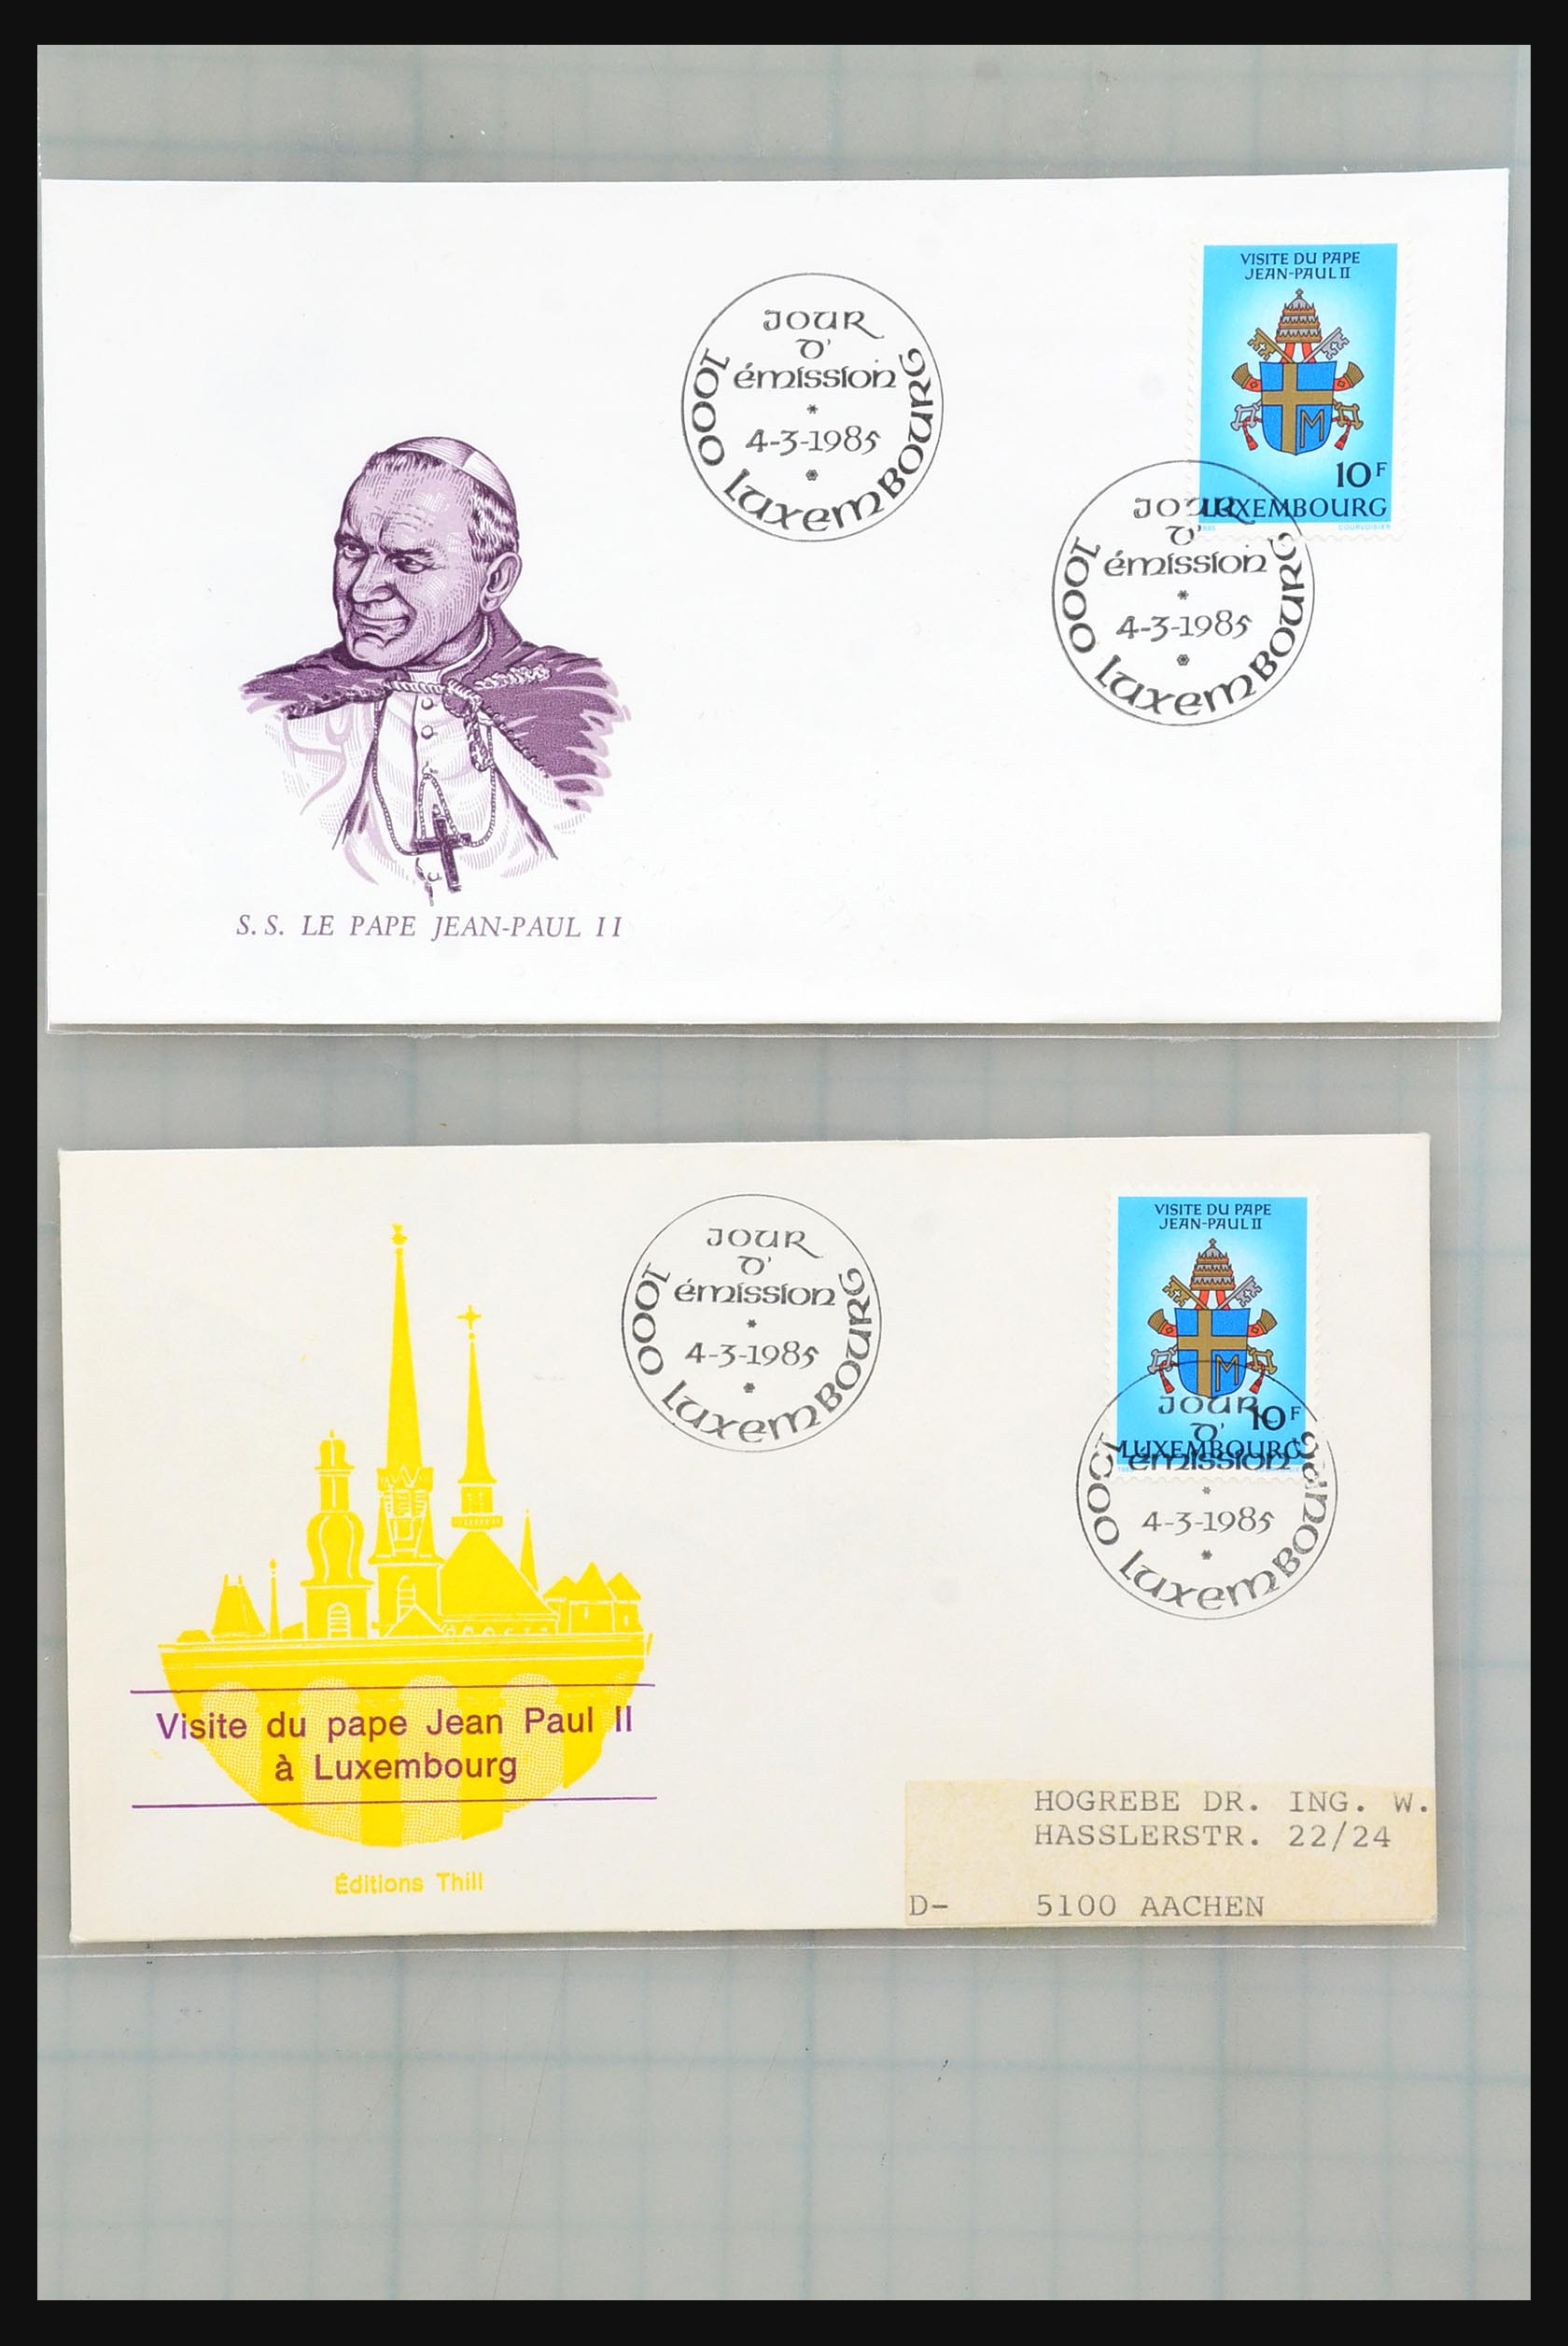 31358 001 - 31358 Portugal/Luxemburg/Griekenland brieven 1880-1960.